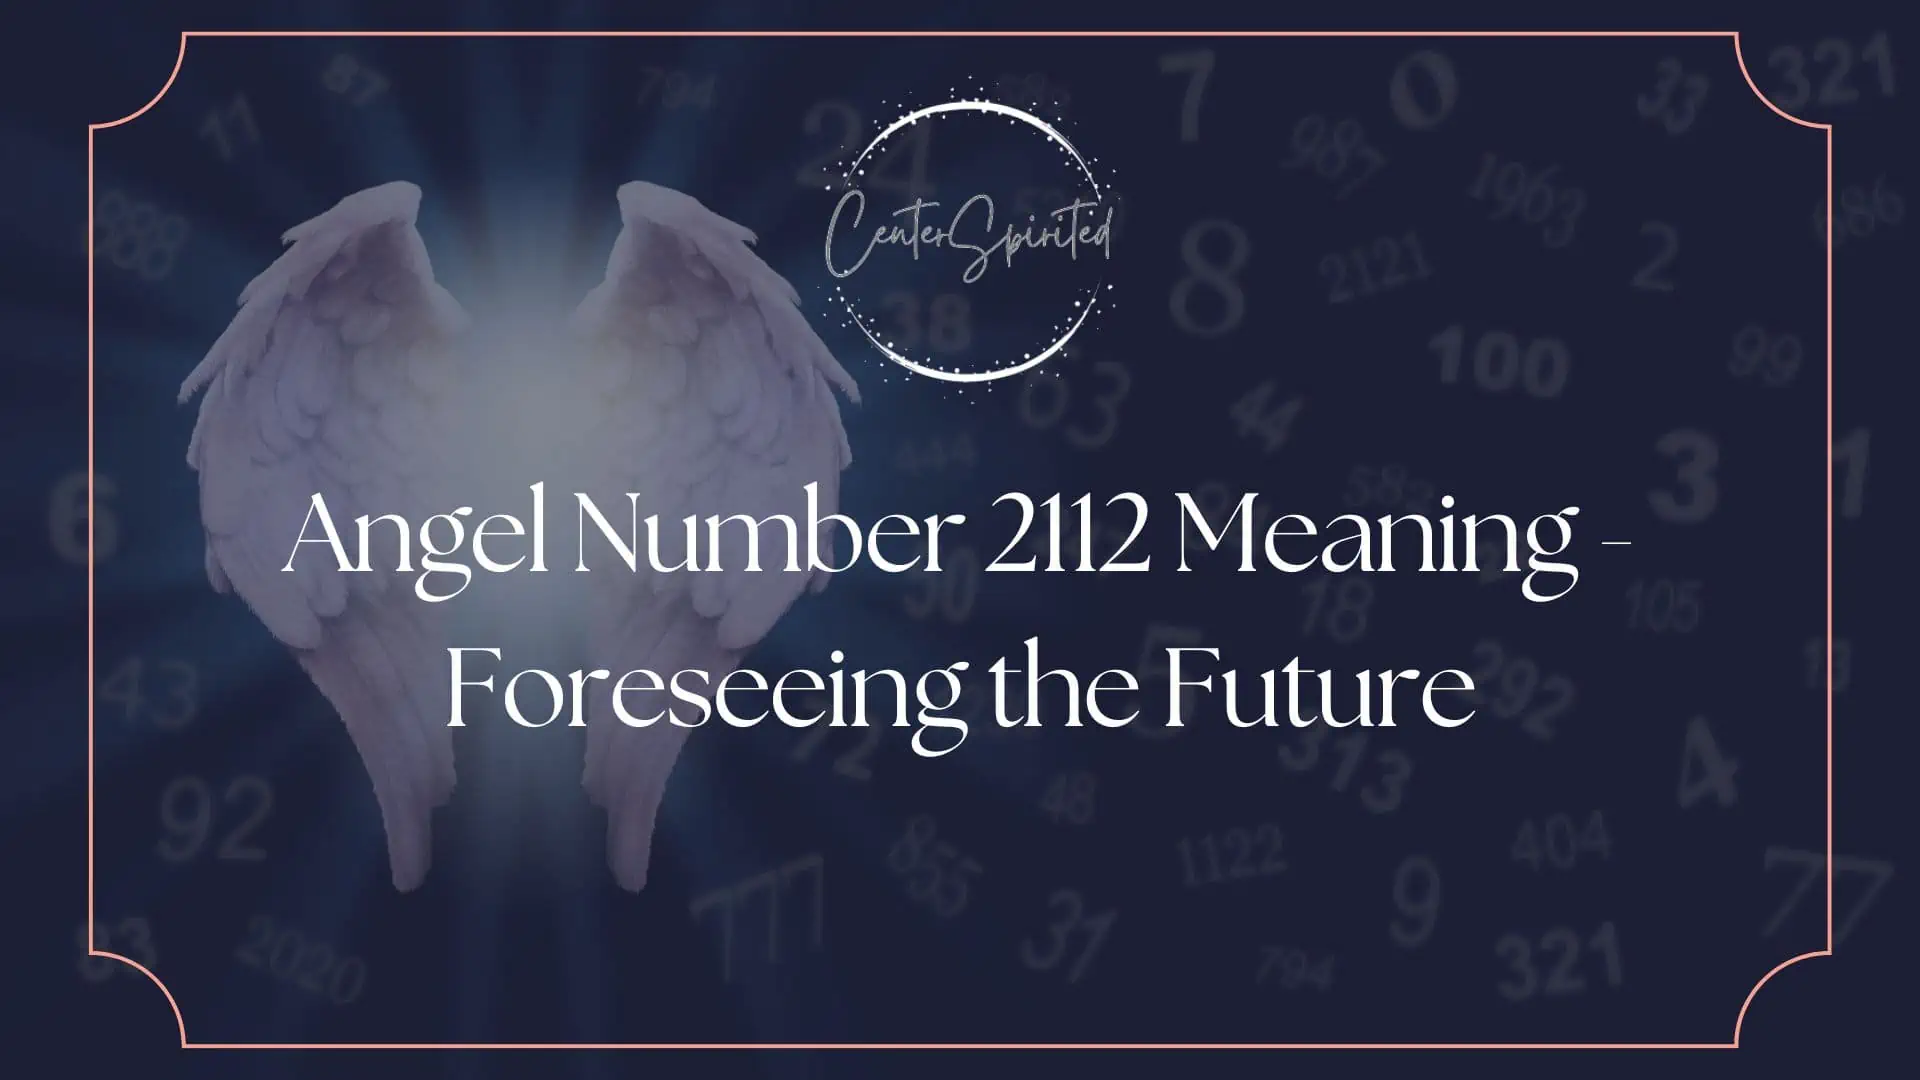 angel number 2112